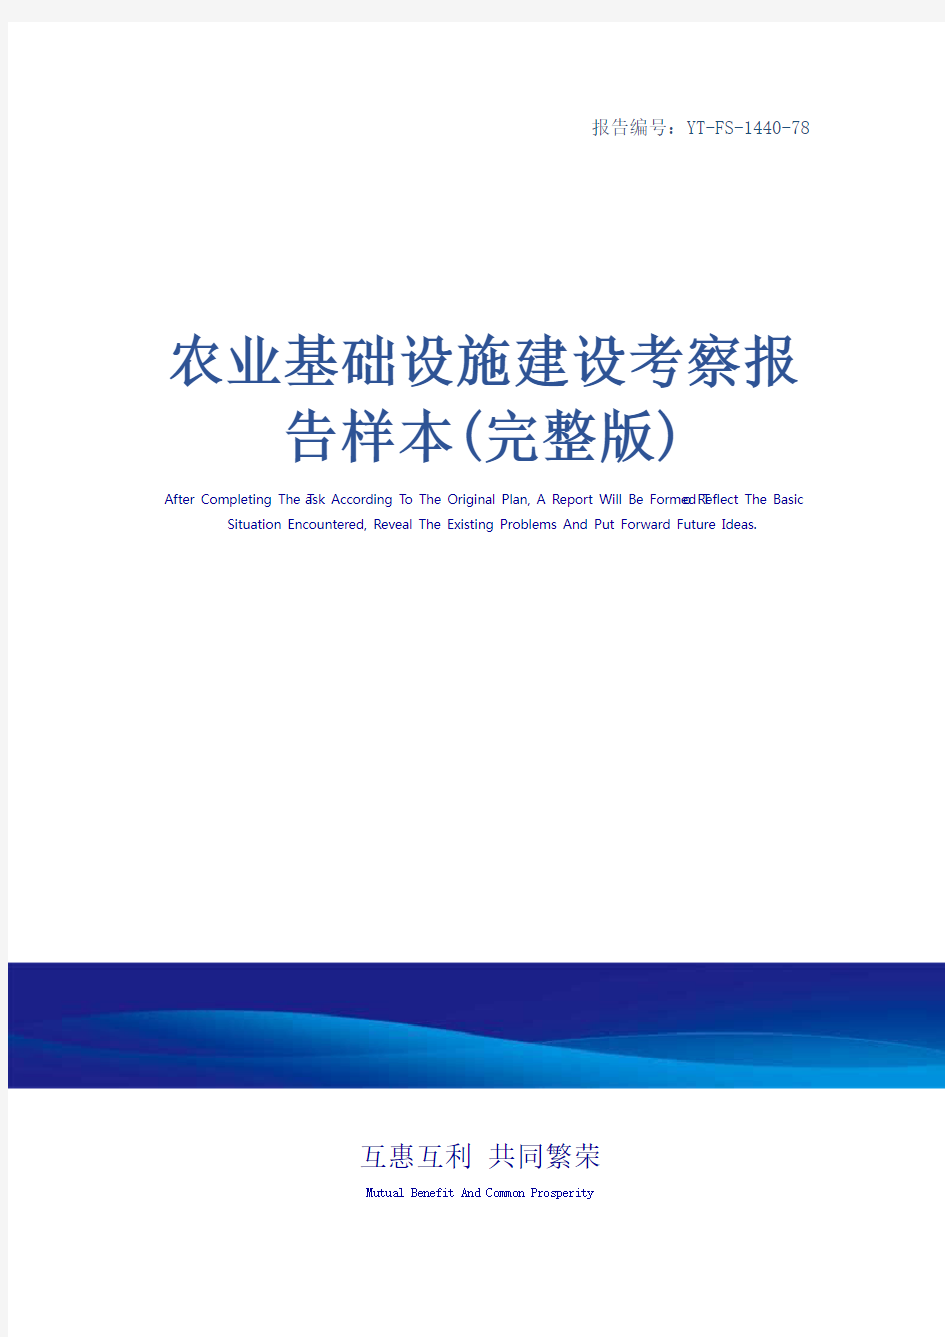 农业基础设施建设考察报告样本(完整版)